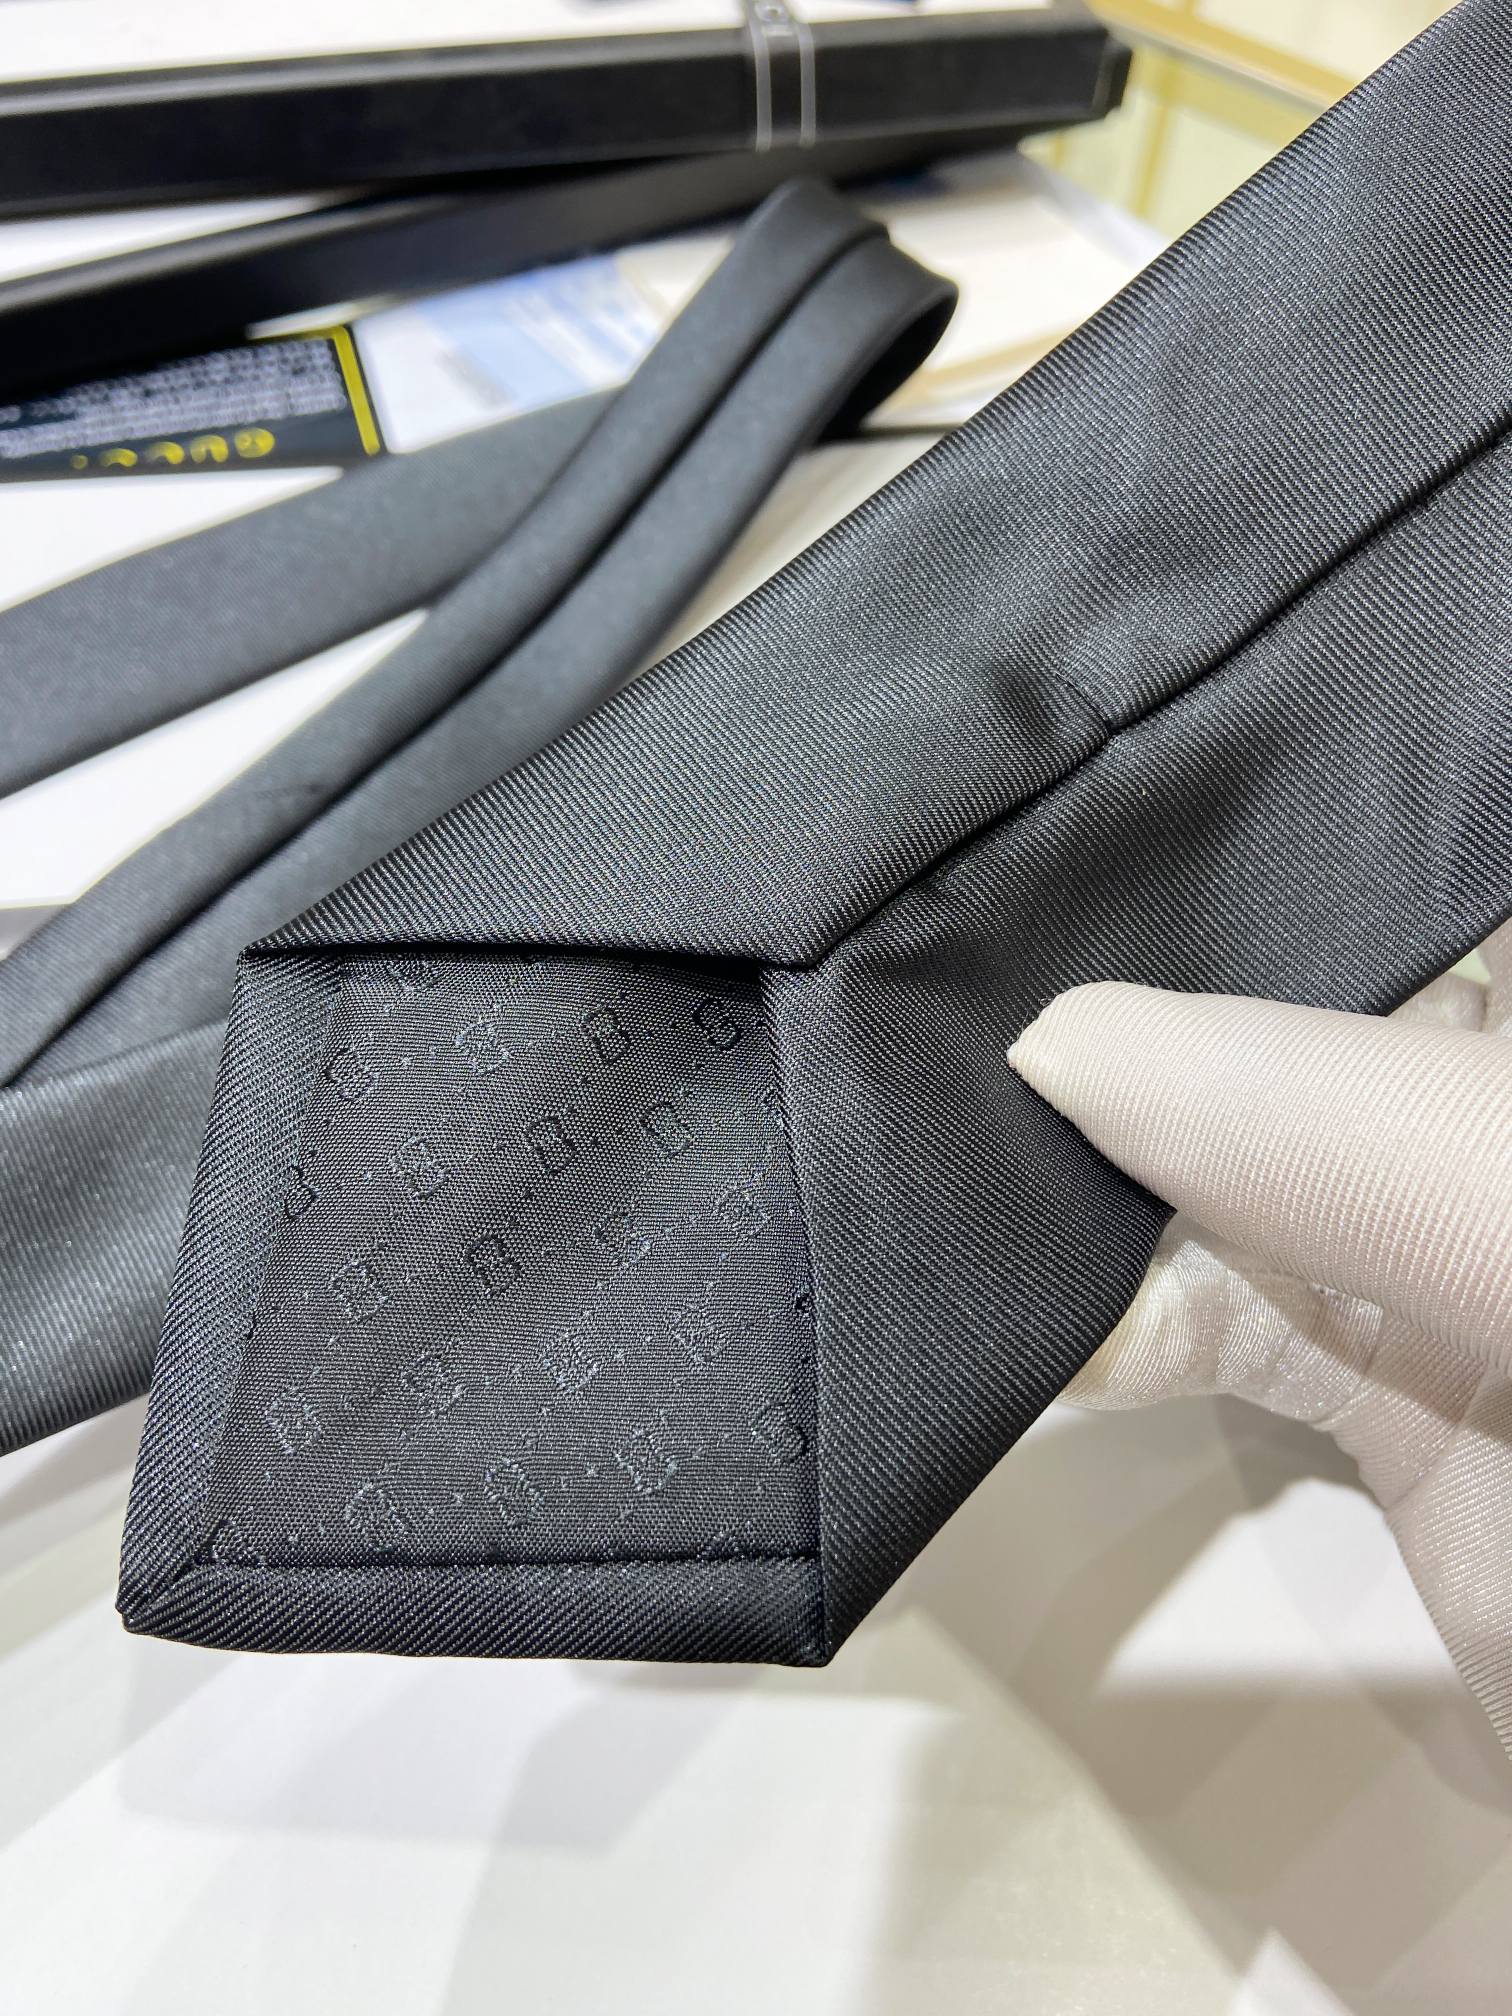 特价G家男士领带系列蜜蜂领带稀有采用经典主题动物绣花展现精湛手工与时尚优雅的理想选择这款领带将标志性完美